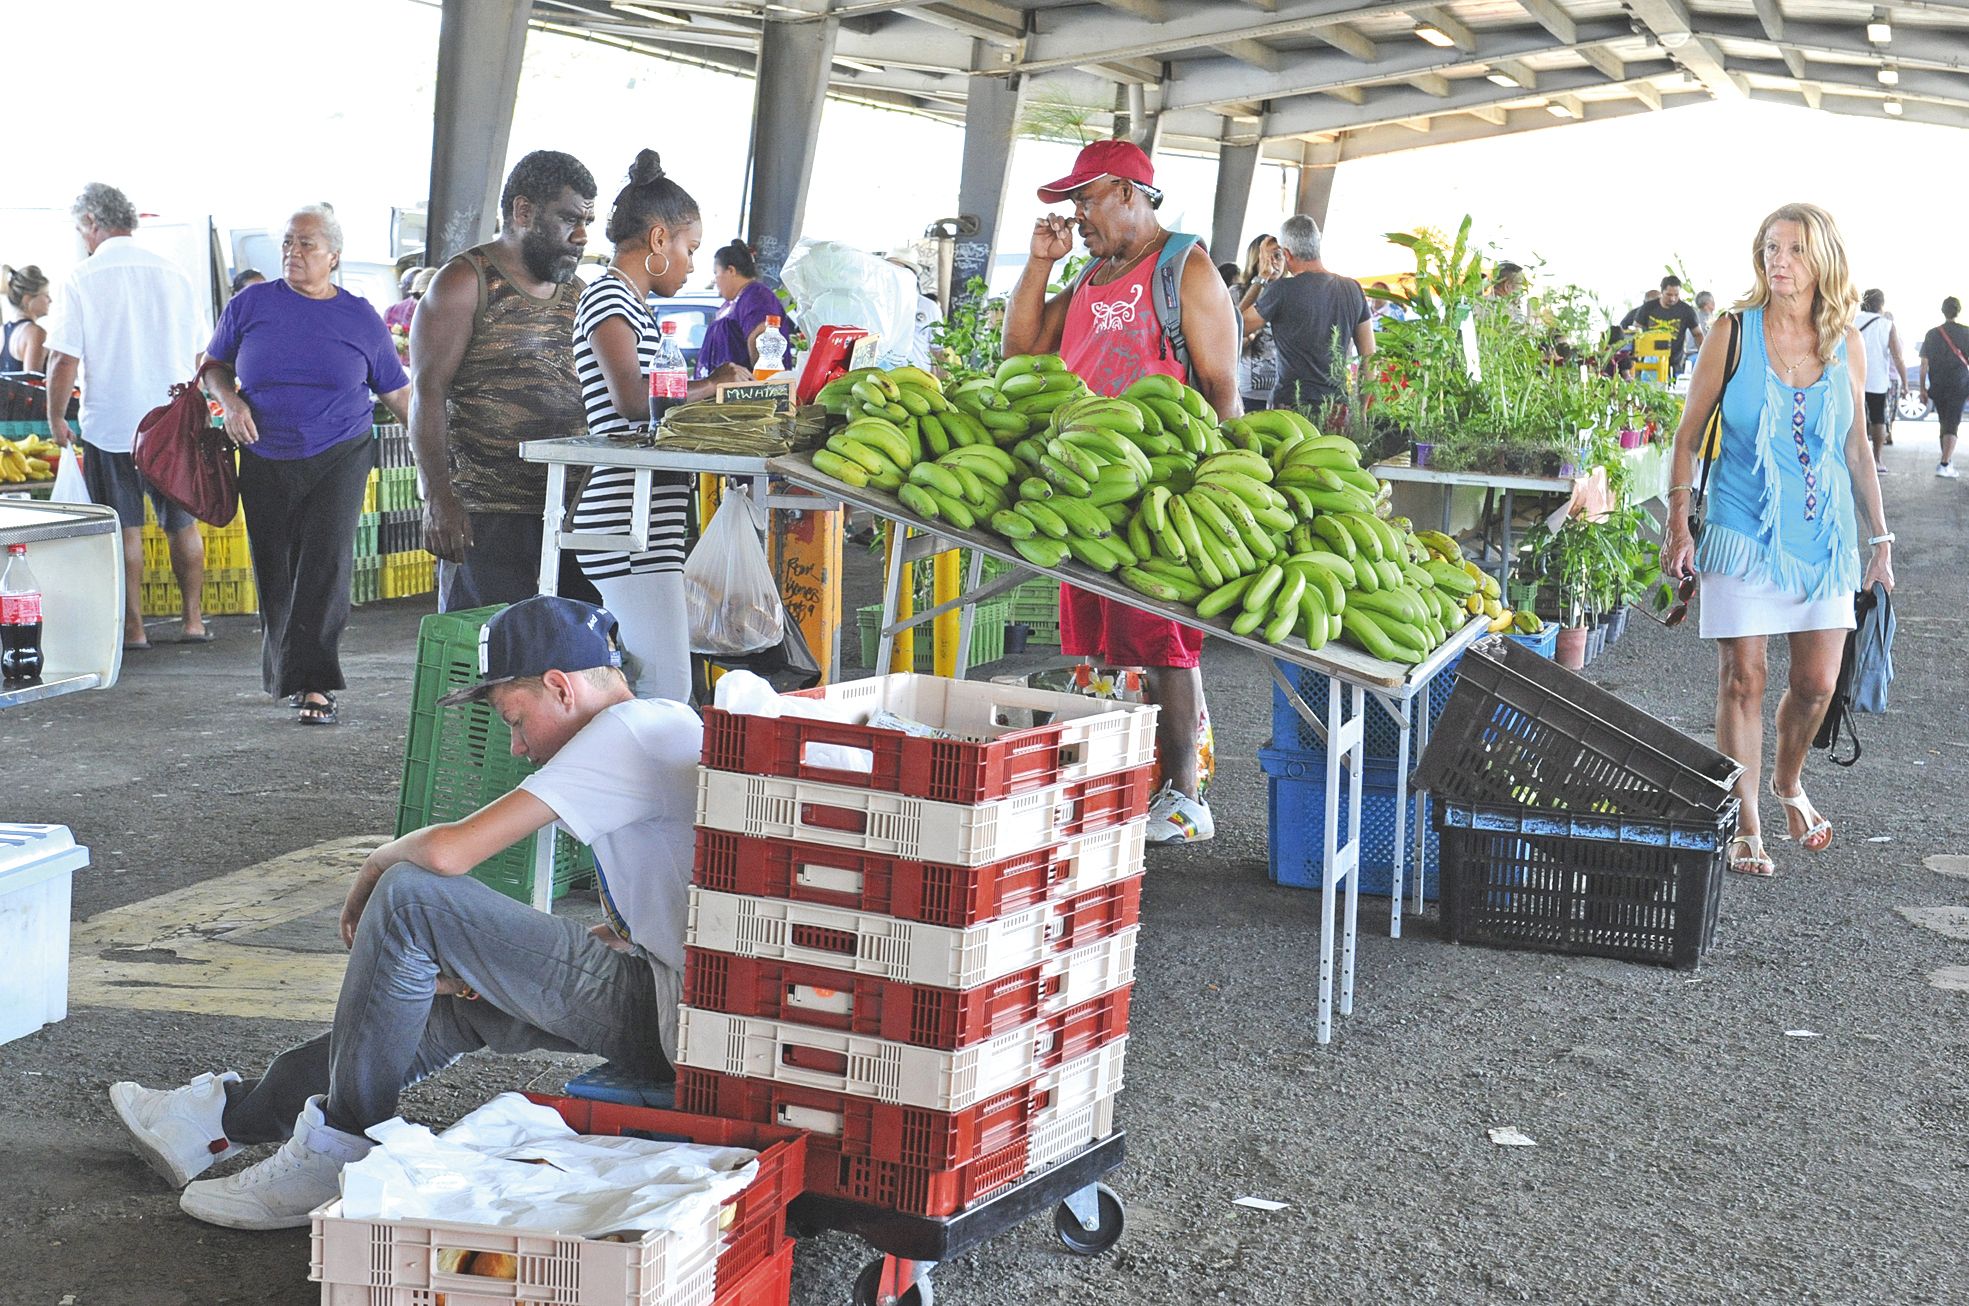 Issus de l’agriculture responsable, et proposés à des prix compétitifs, les fruits et légumes de la Coop1 arrivent au marché de Ducos.